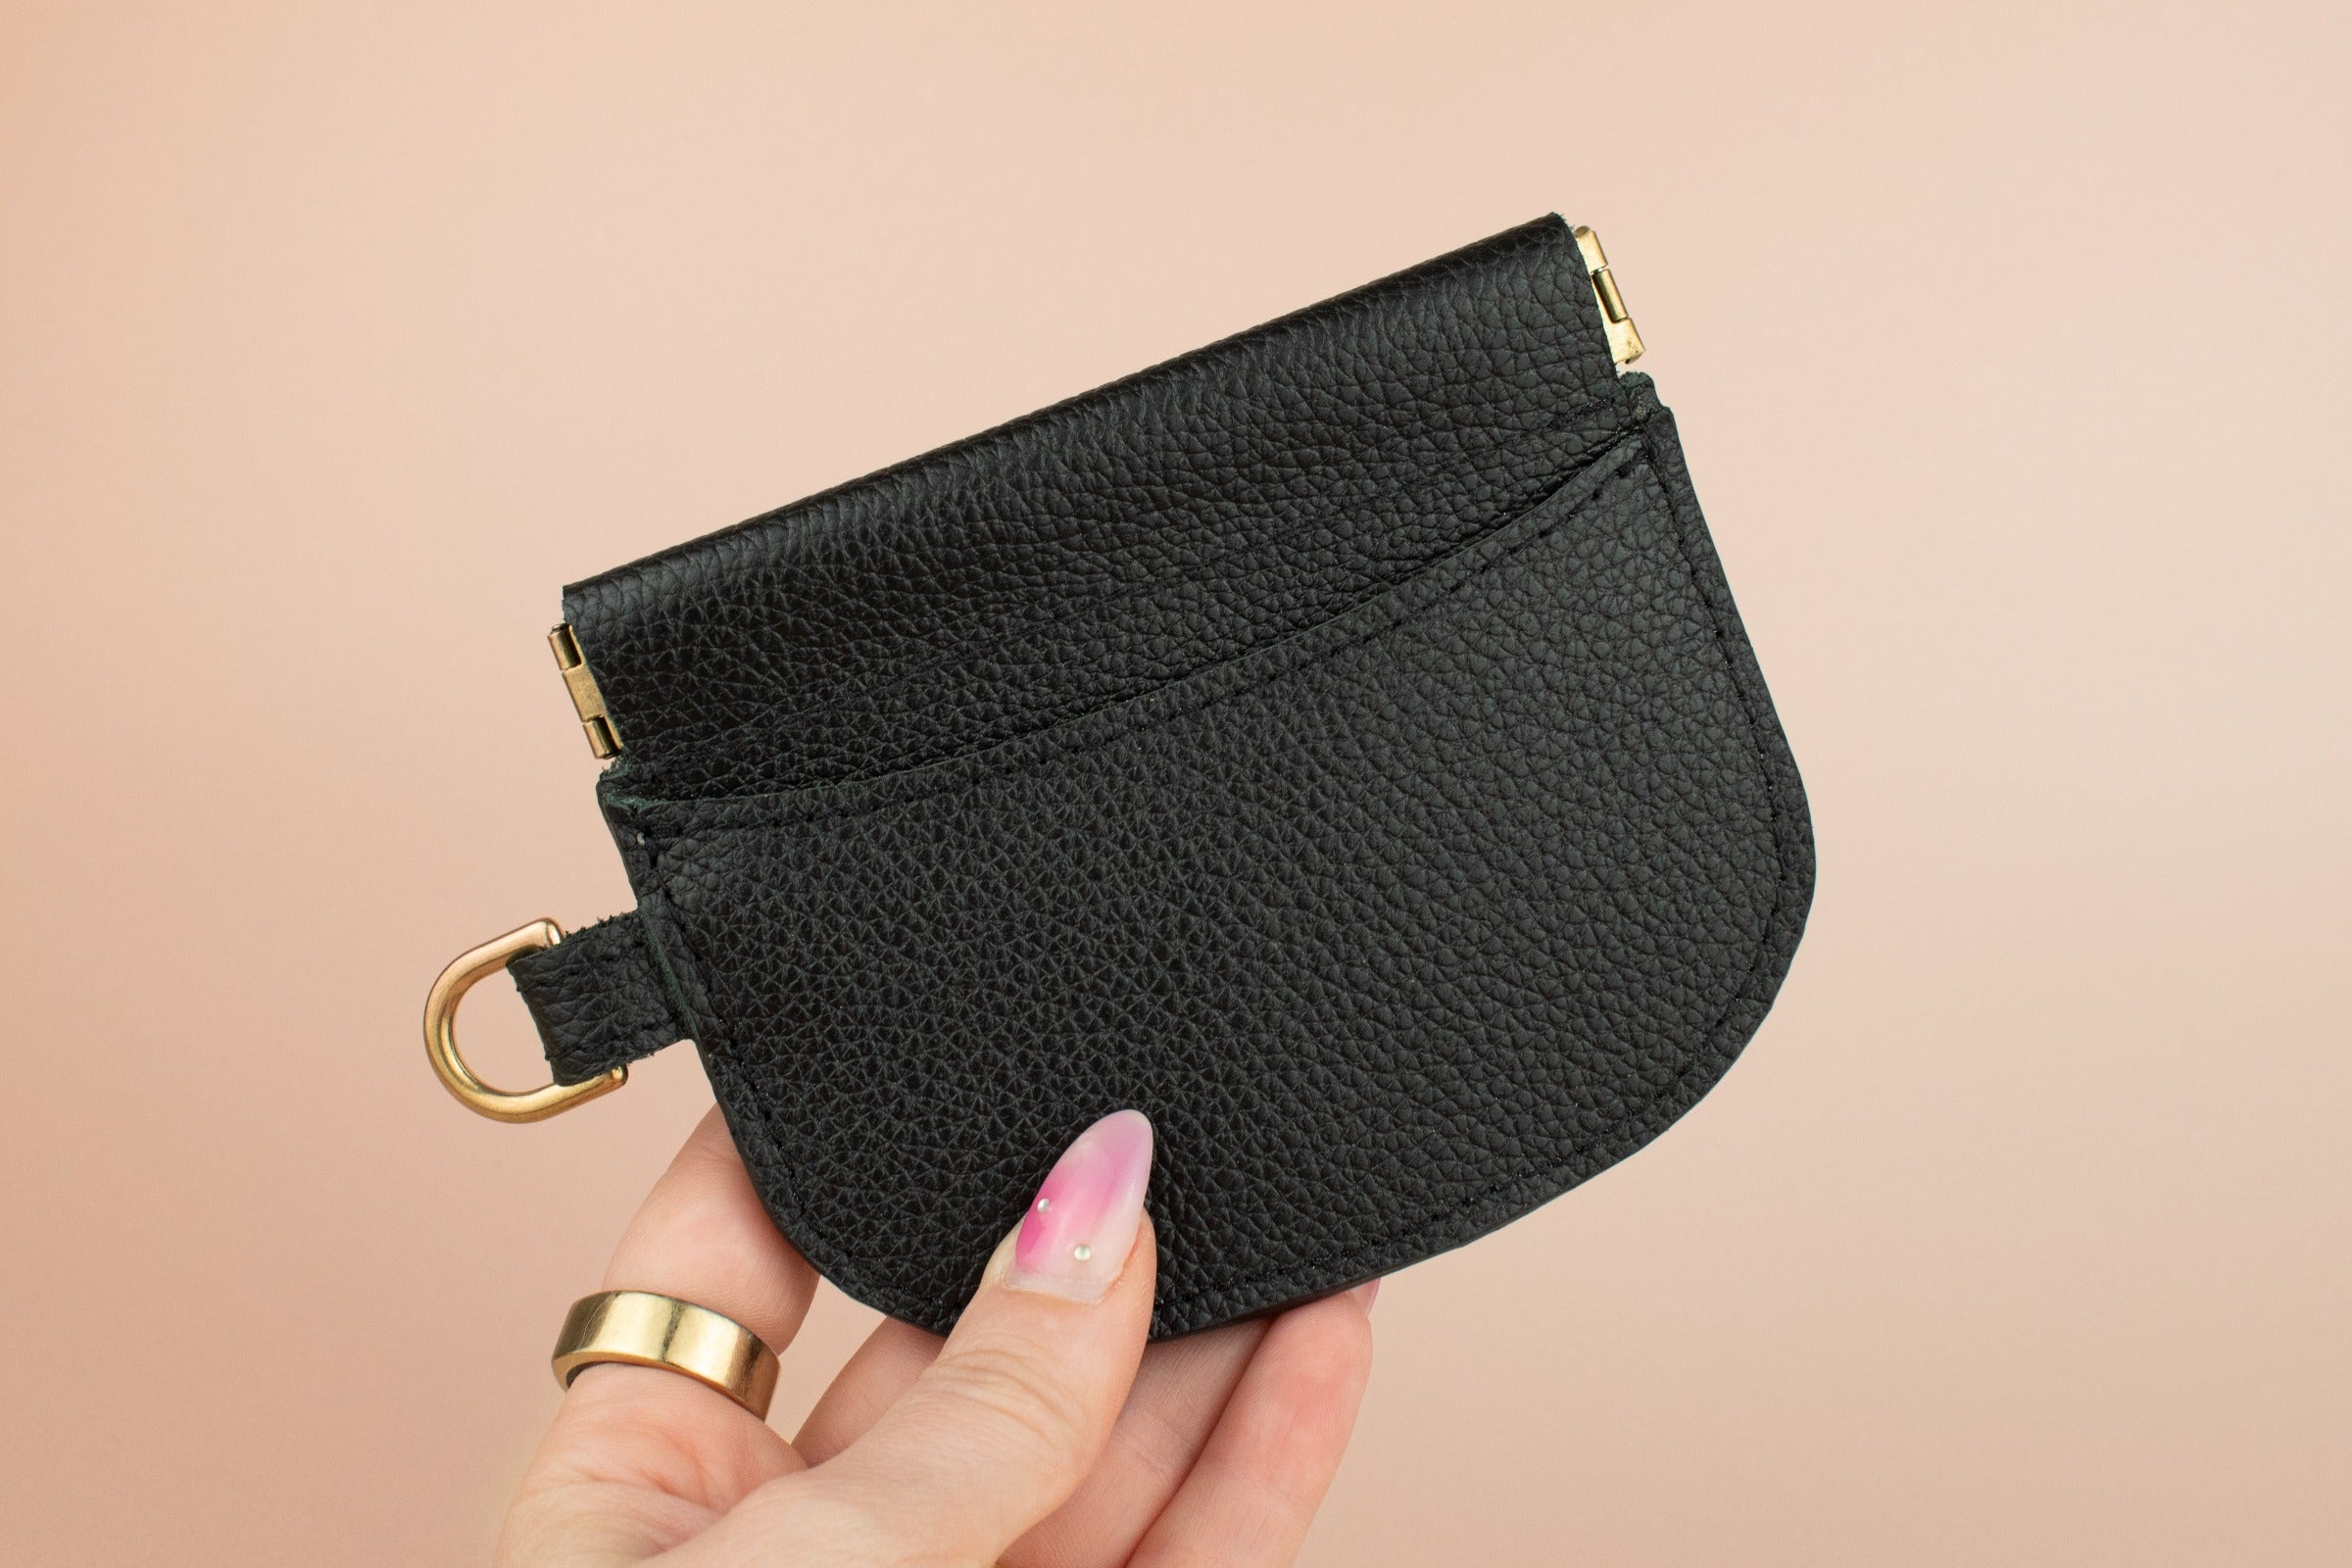 slim modern cardholder in black, leather card wallet case with gold hardware exterior card pocket